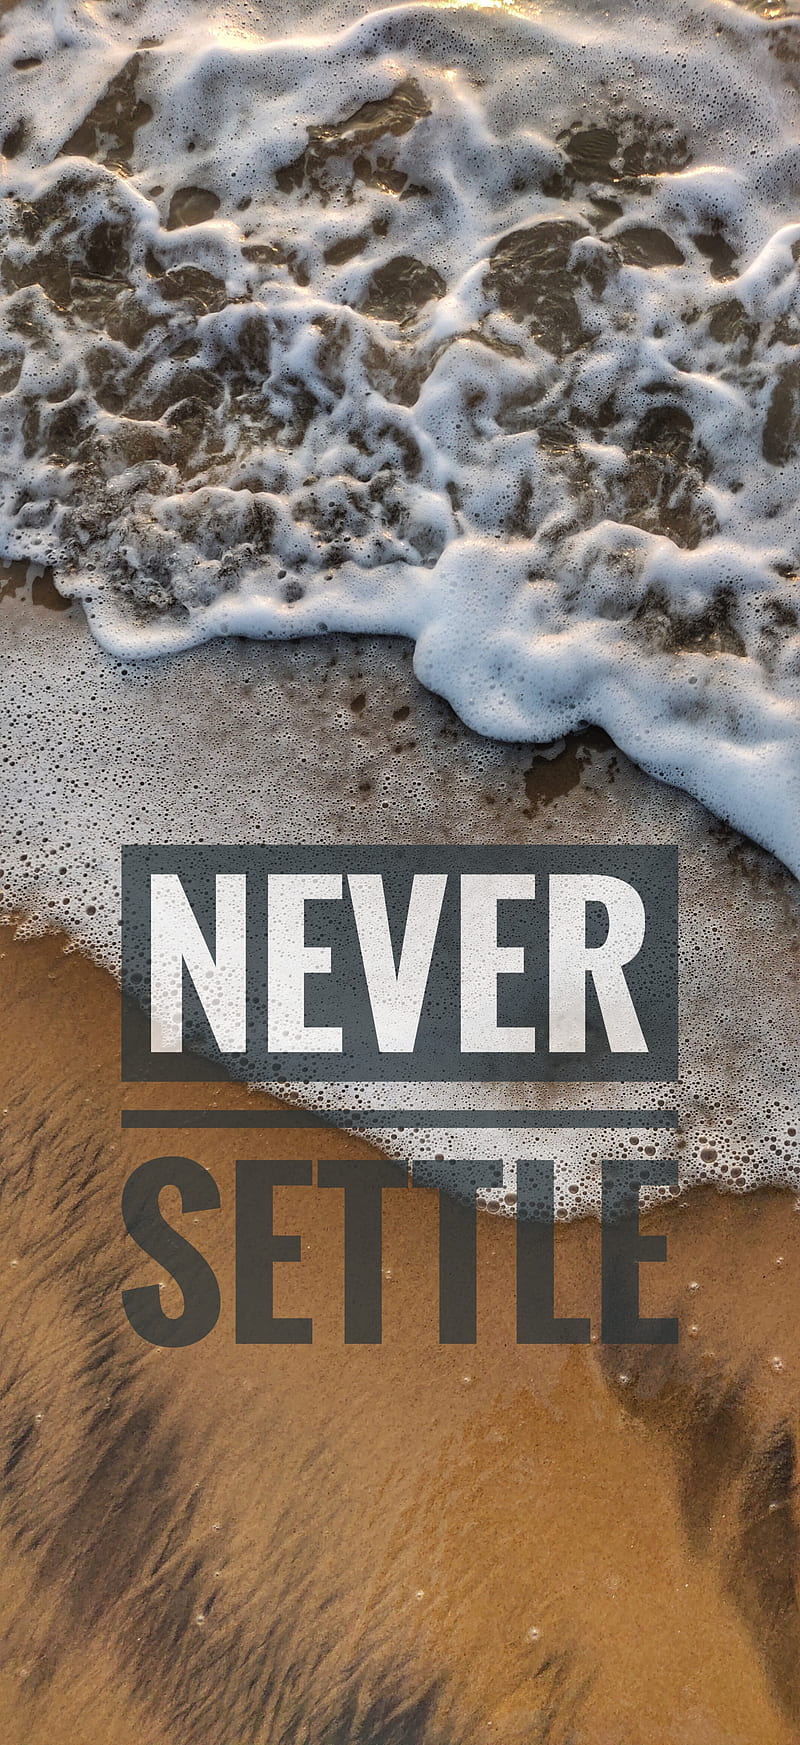 OnePlus, beach, never settle, ocean, sand, HD phone wallpaper